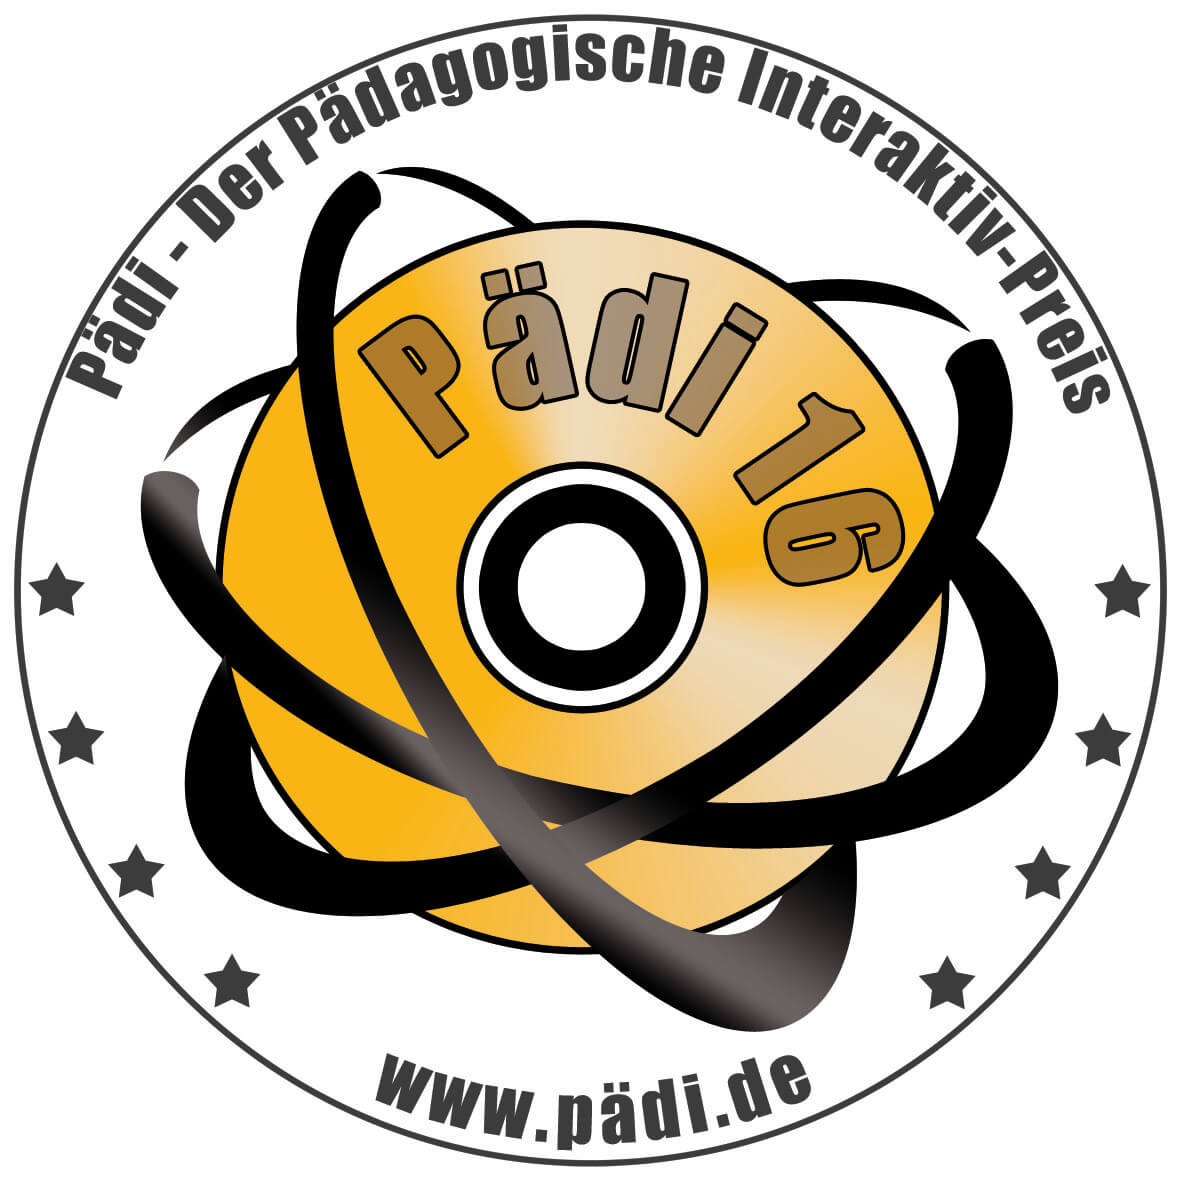 Pädi - El premio educativo interactivo